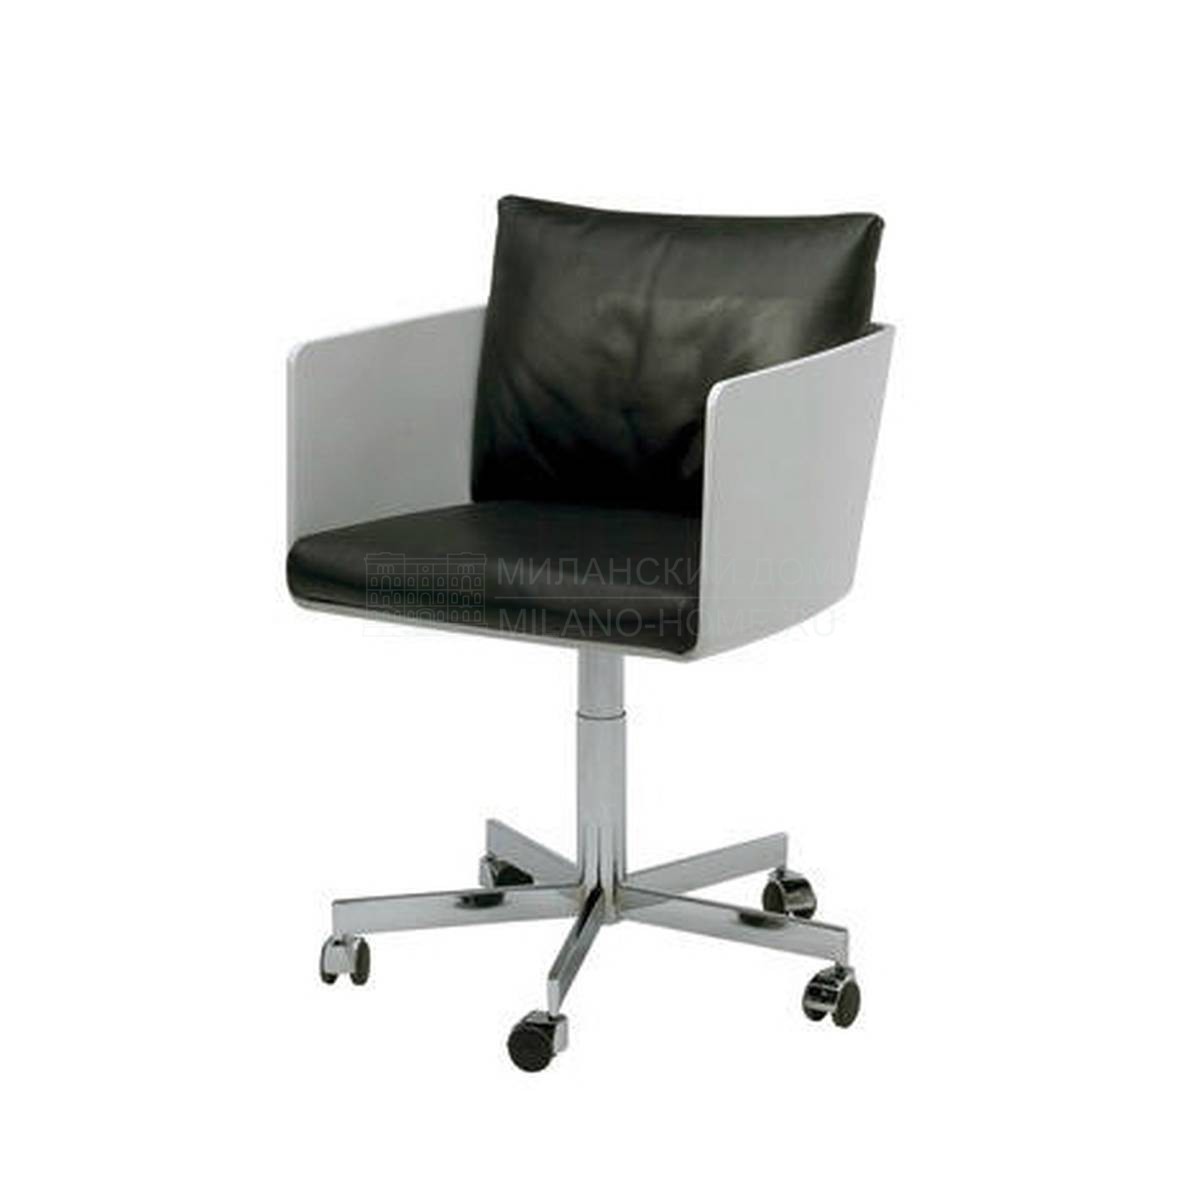 Рабочее кресло Pod work chair из Италии фабрики LIVING DIVANI